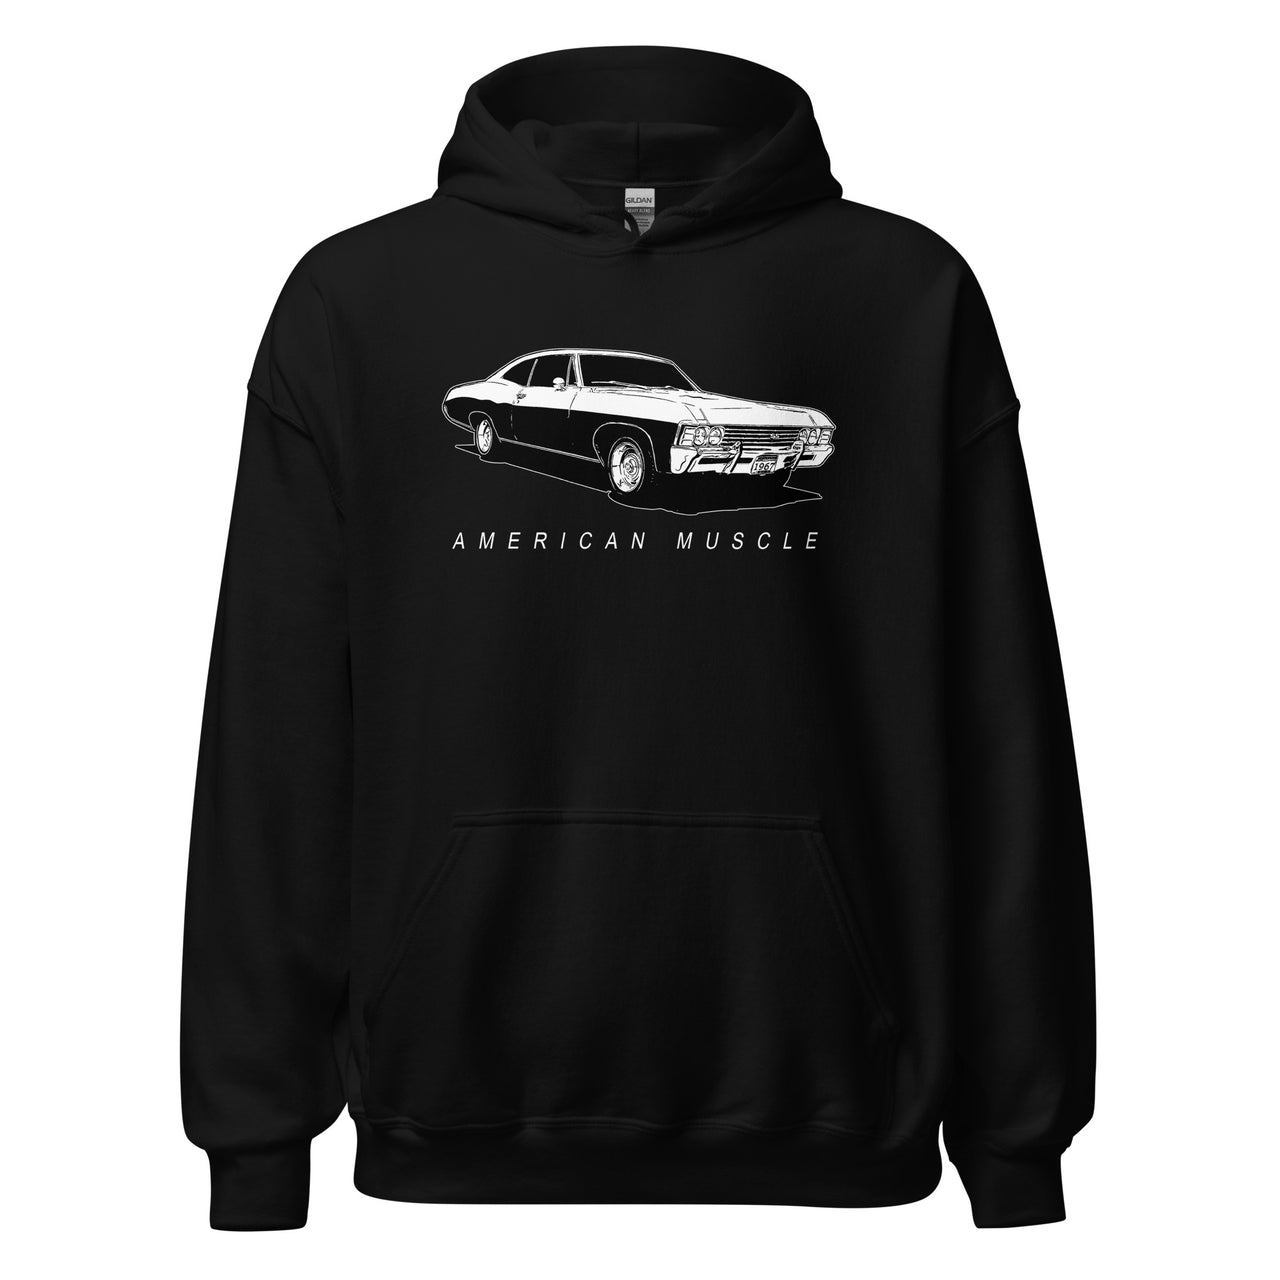 1967 Impala Hoodie American Muscle Car Sweatshirt in black